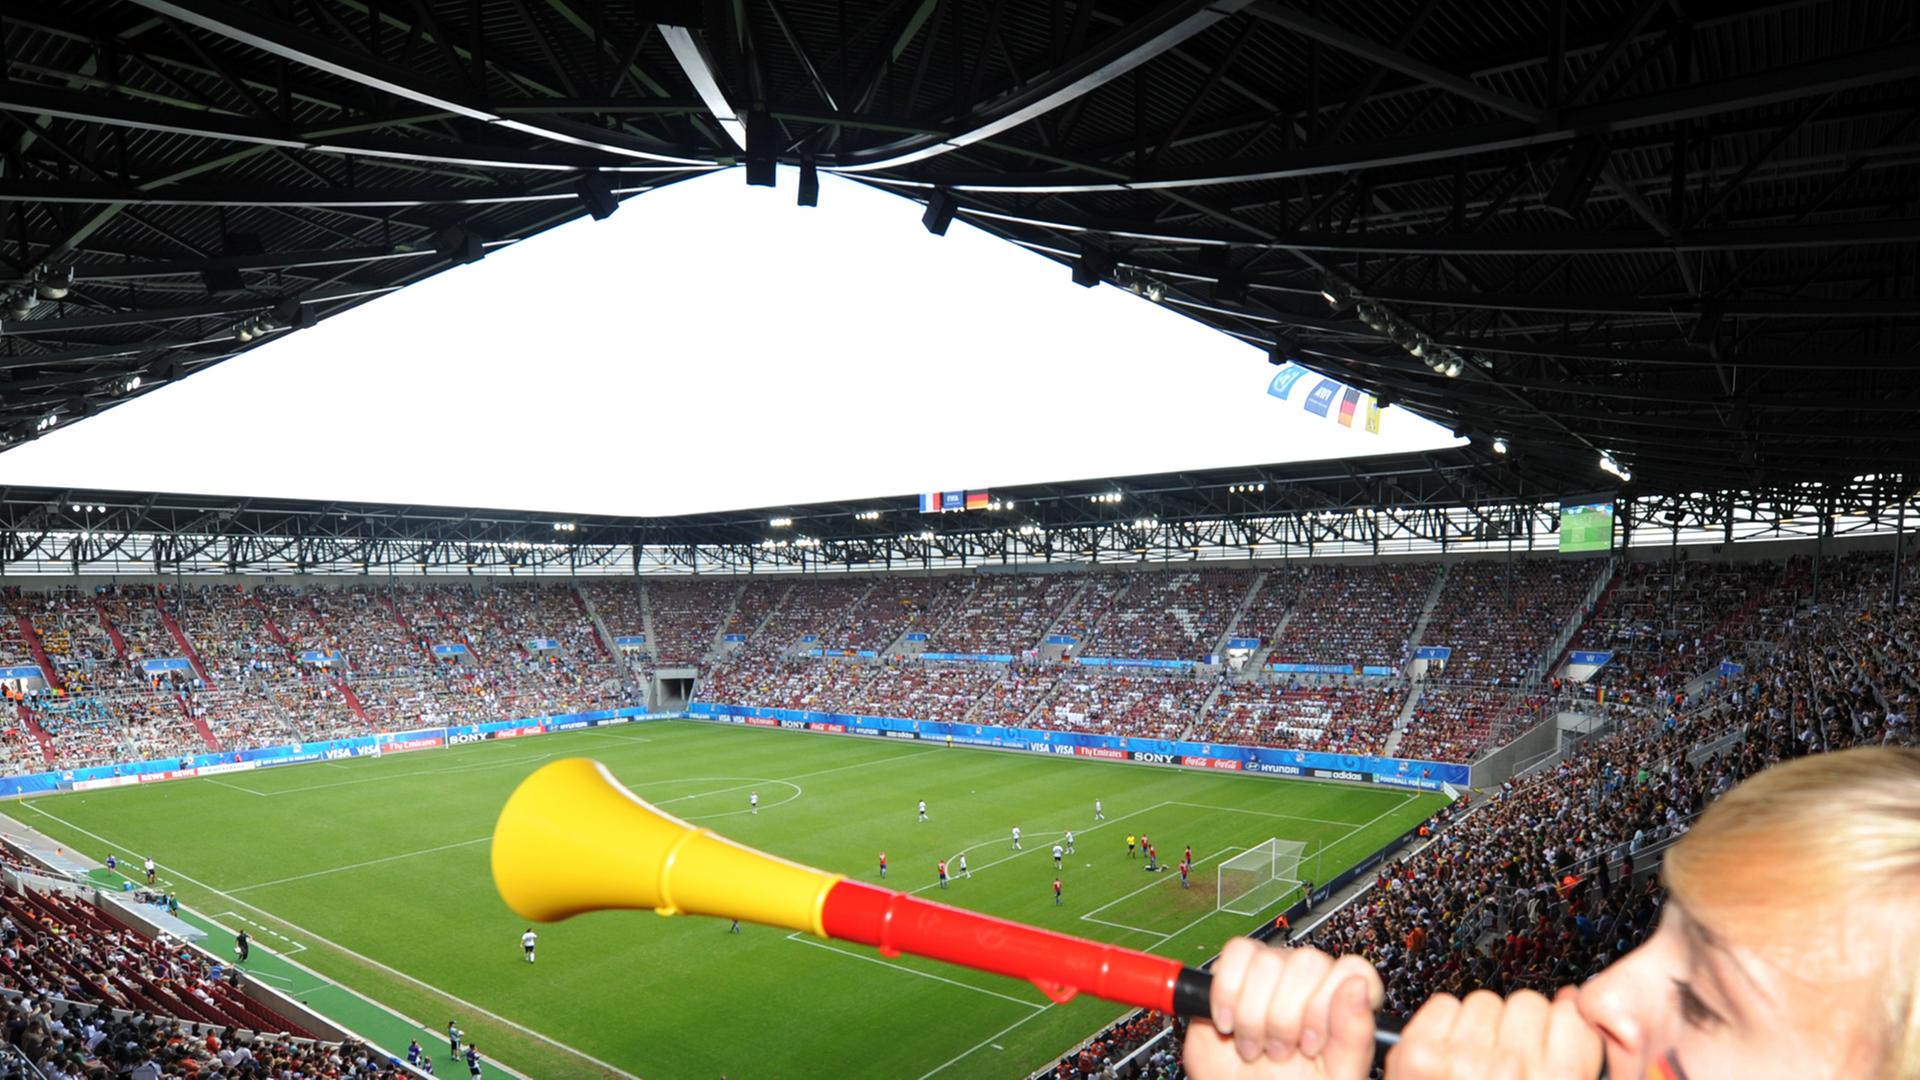 Eine Zuschauerin bläst in einem Stadion in eine Vuvuzela.